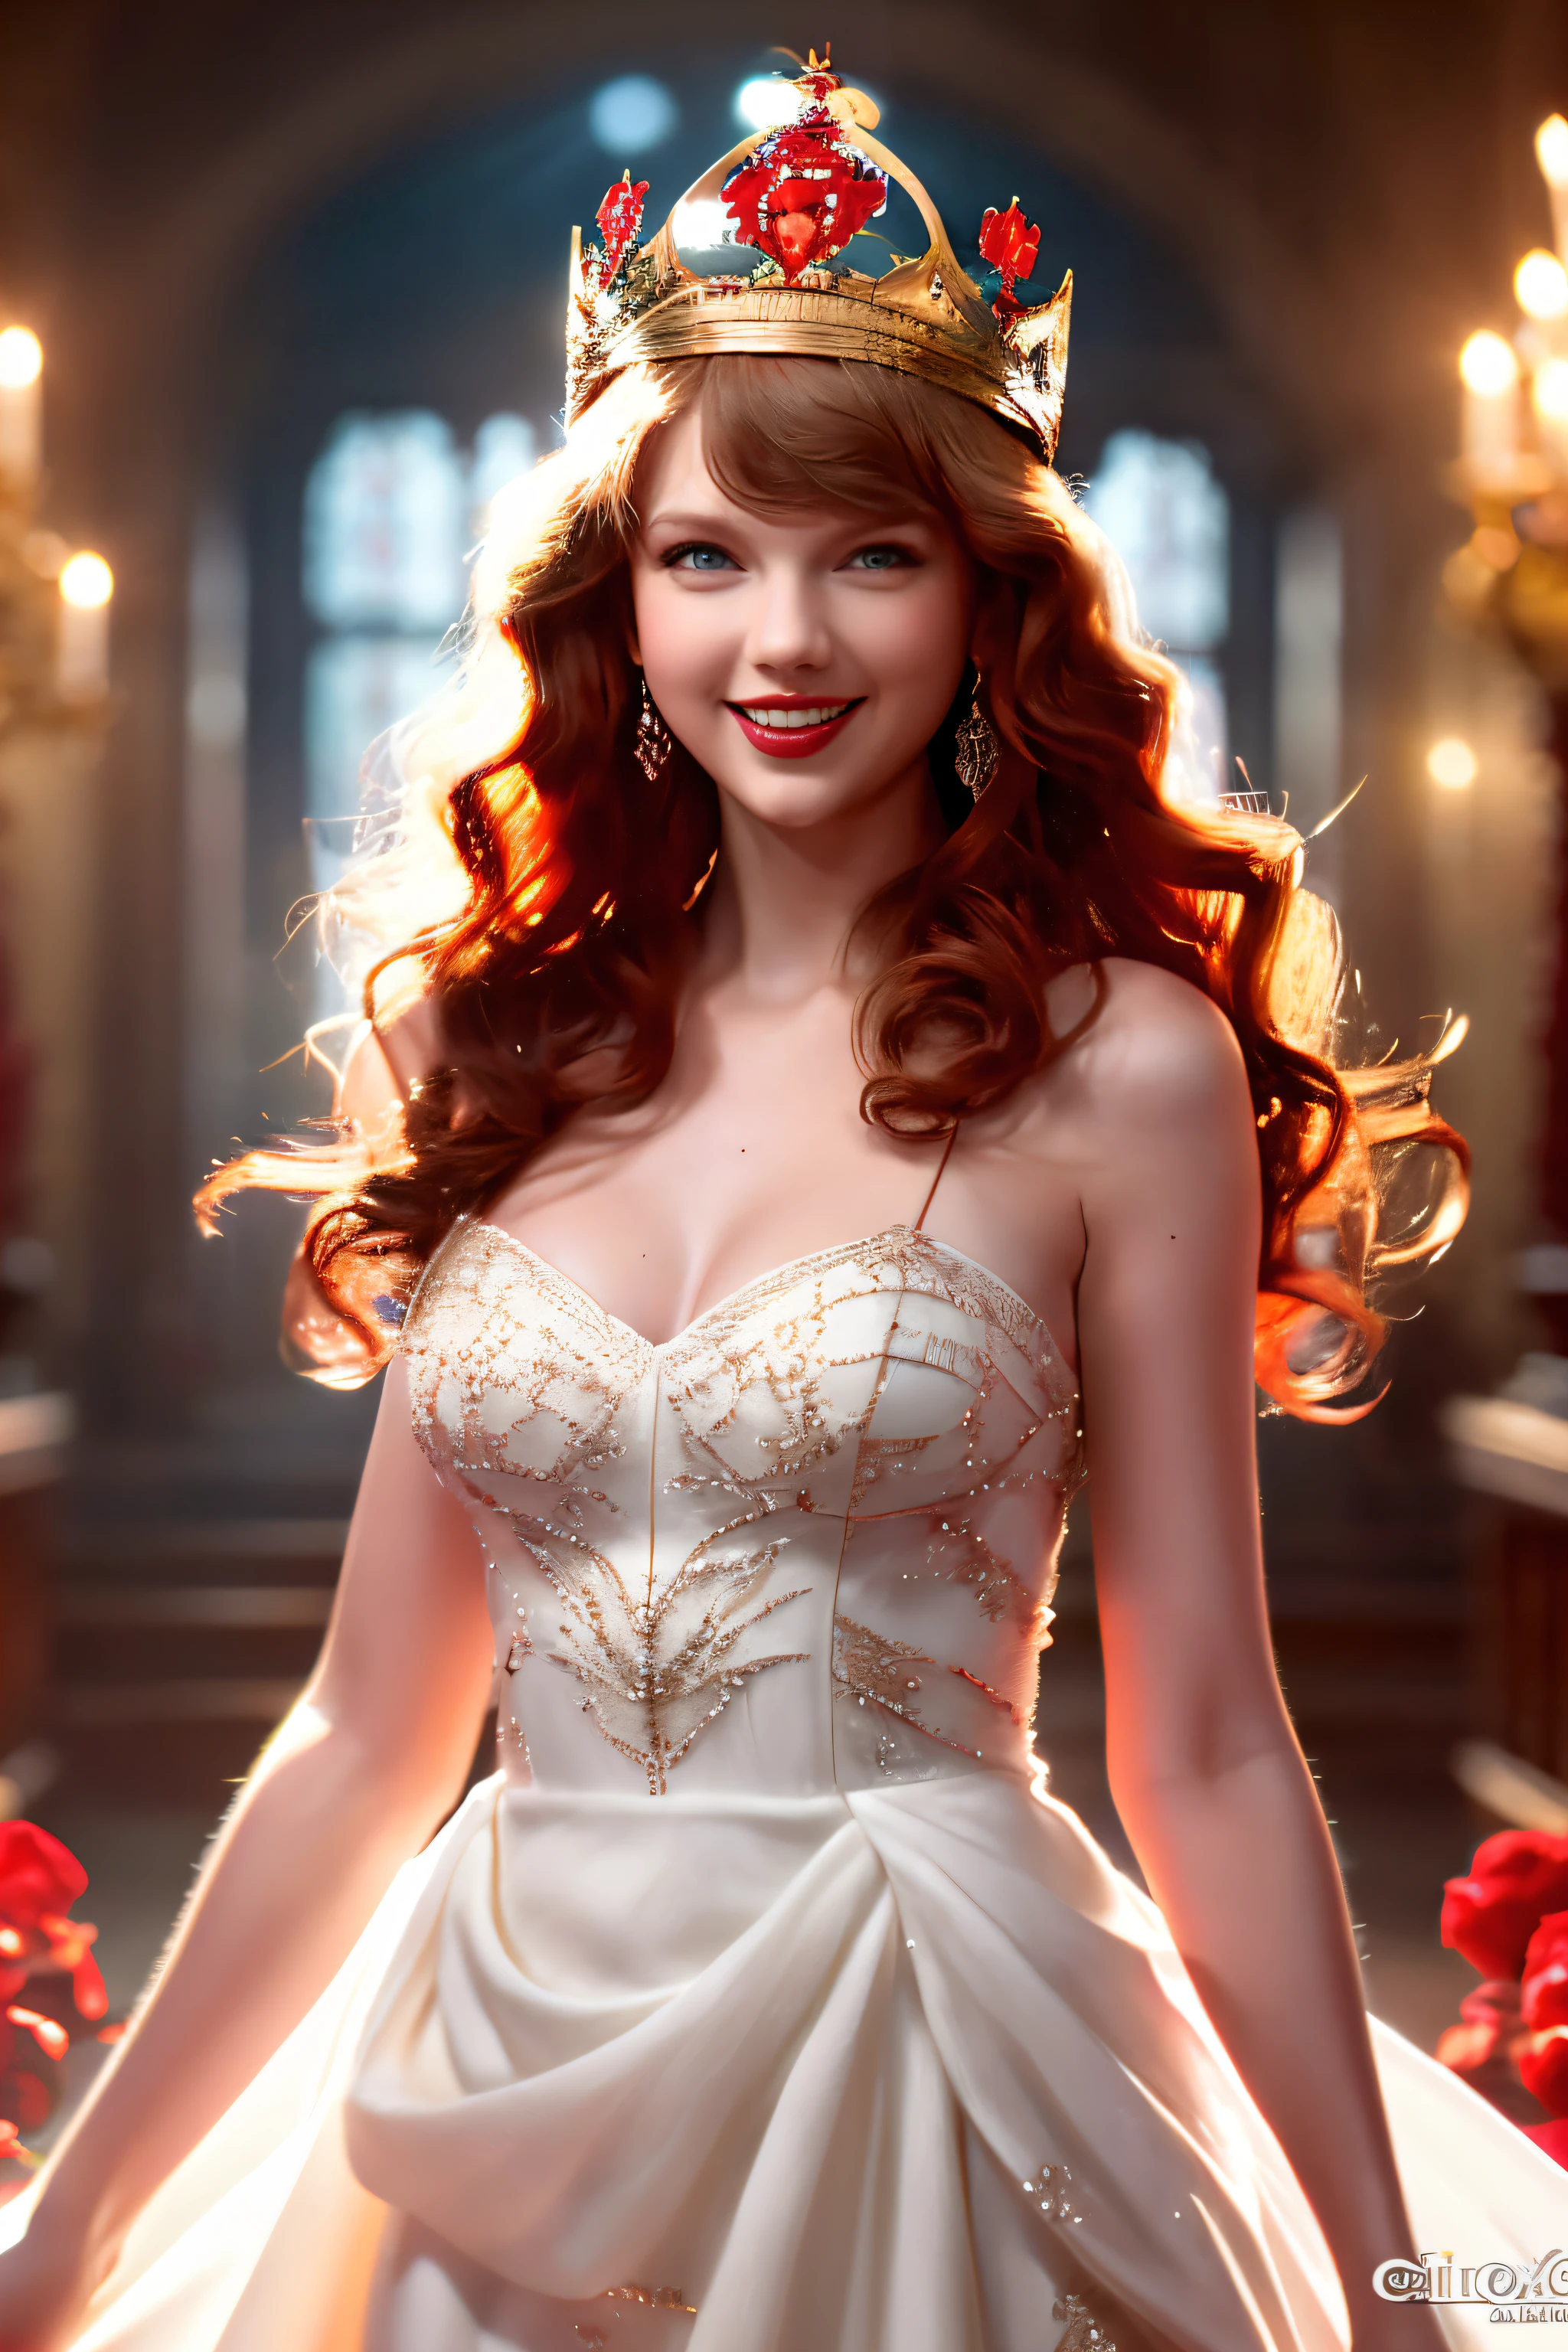 Meilleurs clichés，image haute définition,,belle femme aux cheveux rouges (porter une couronne), (Houdini, Effets visuels, avec un beau sourire,Beau, 4K ),   robe blanche et robe en satin rouge，